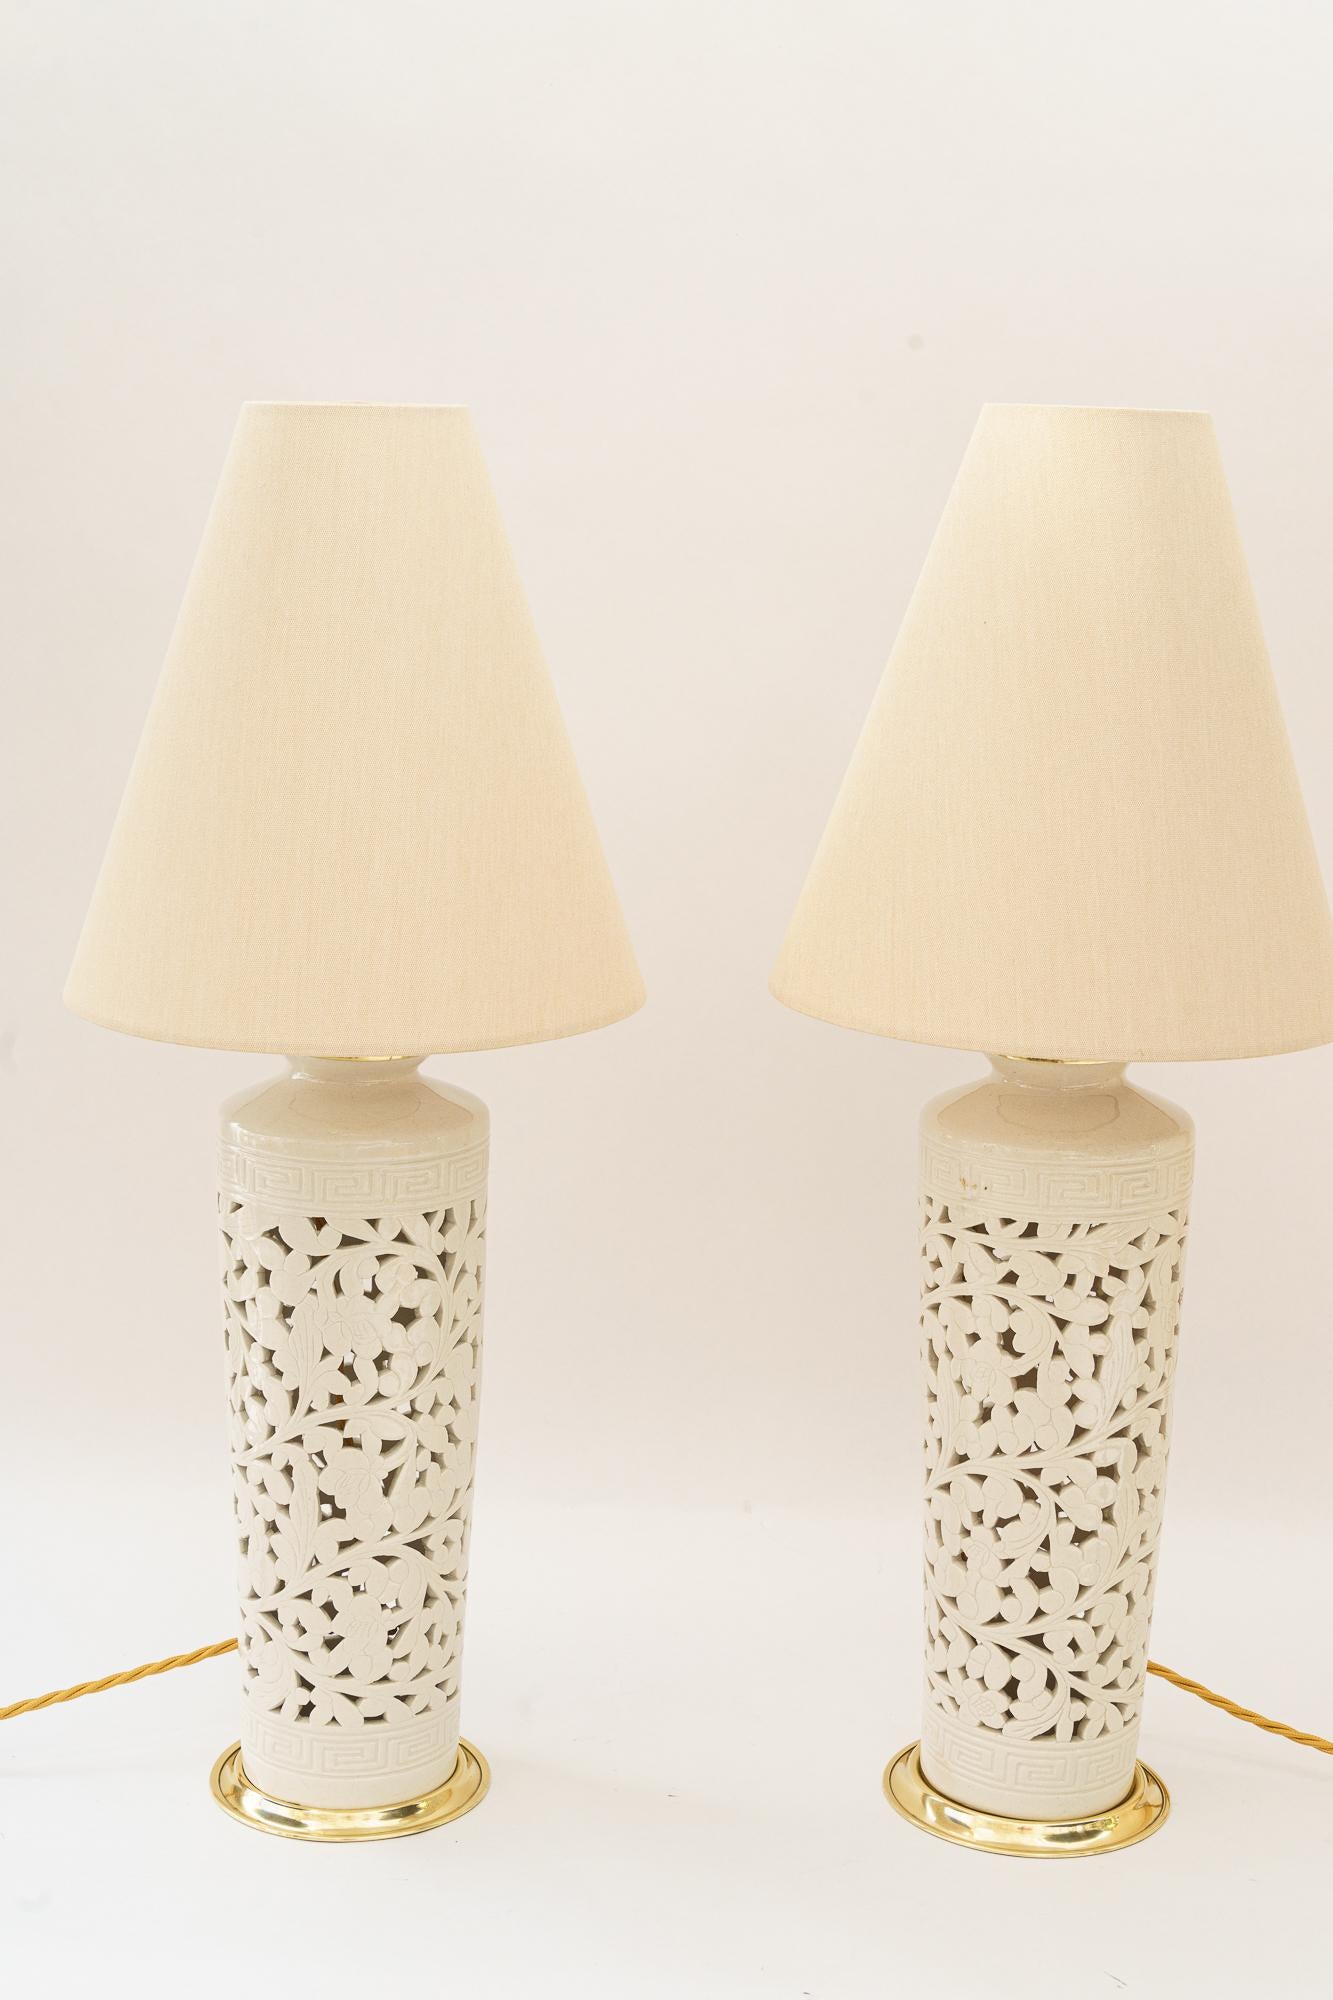 2 Grandes lampes de table en céramique viennoise vers les années 1950
Etat original
Les stores sont remplacés ( nouveaux )